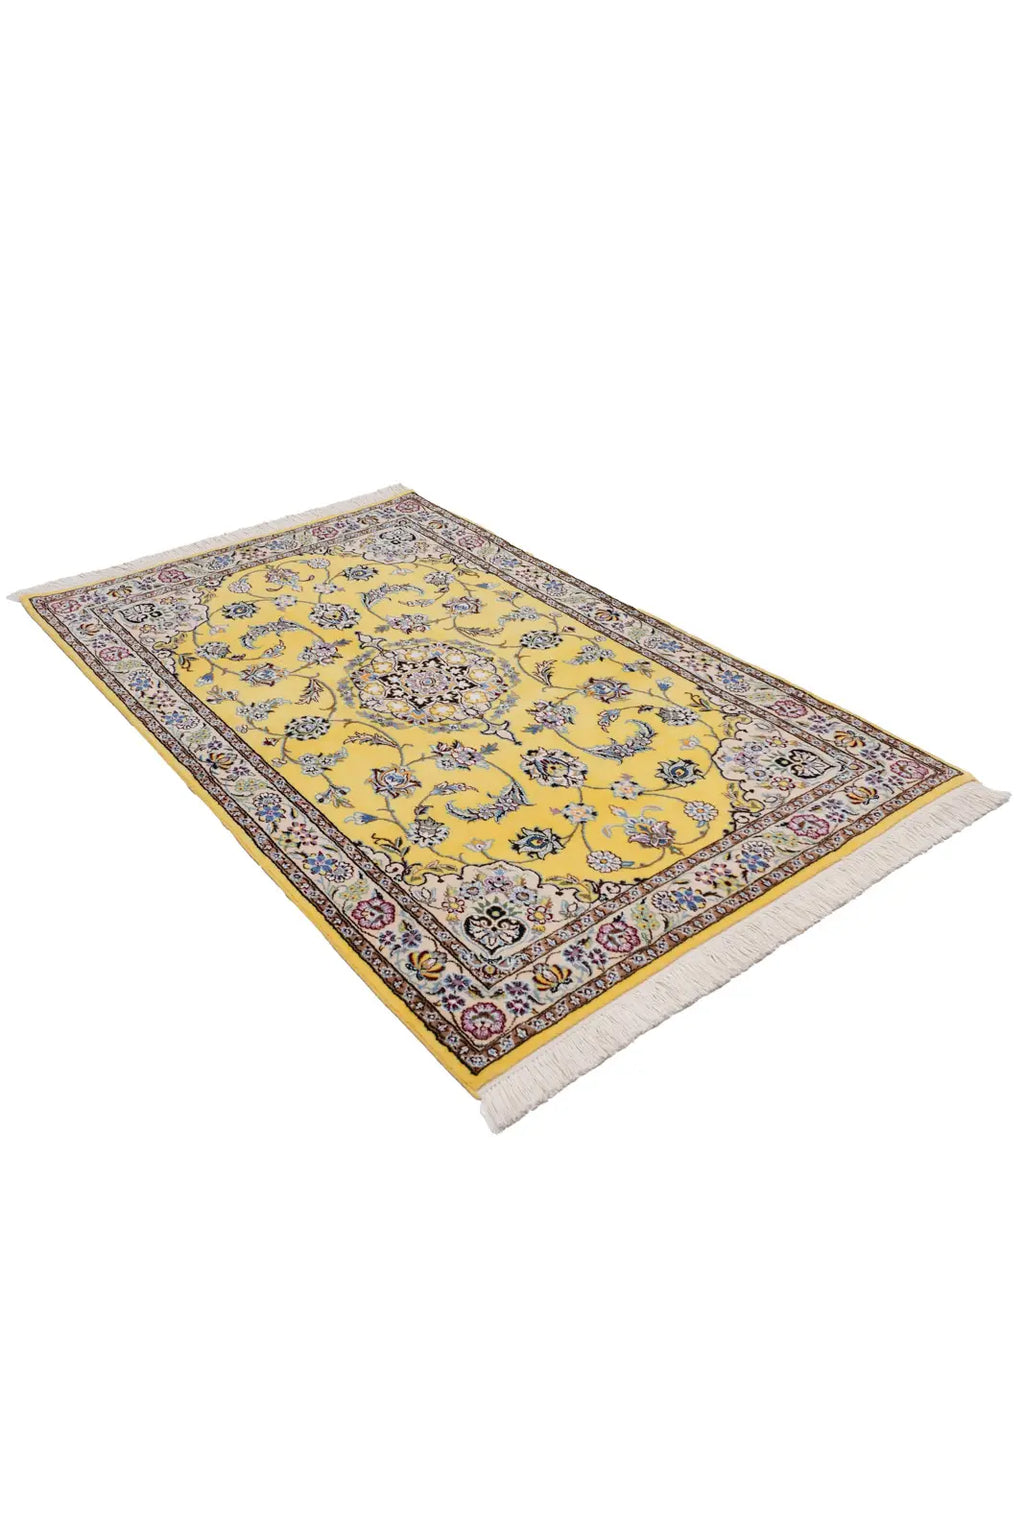 ペルシャ絨毯 ナイン(100x150cm)黄色|ウール&シルク【ラグ専門店】